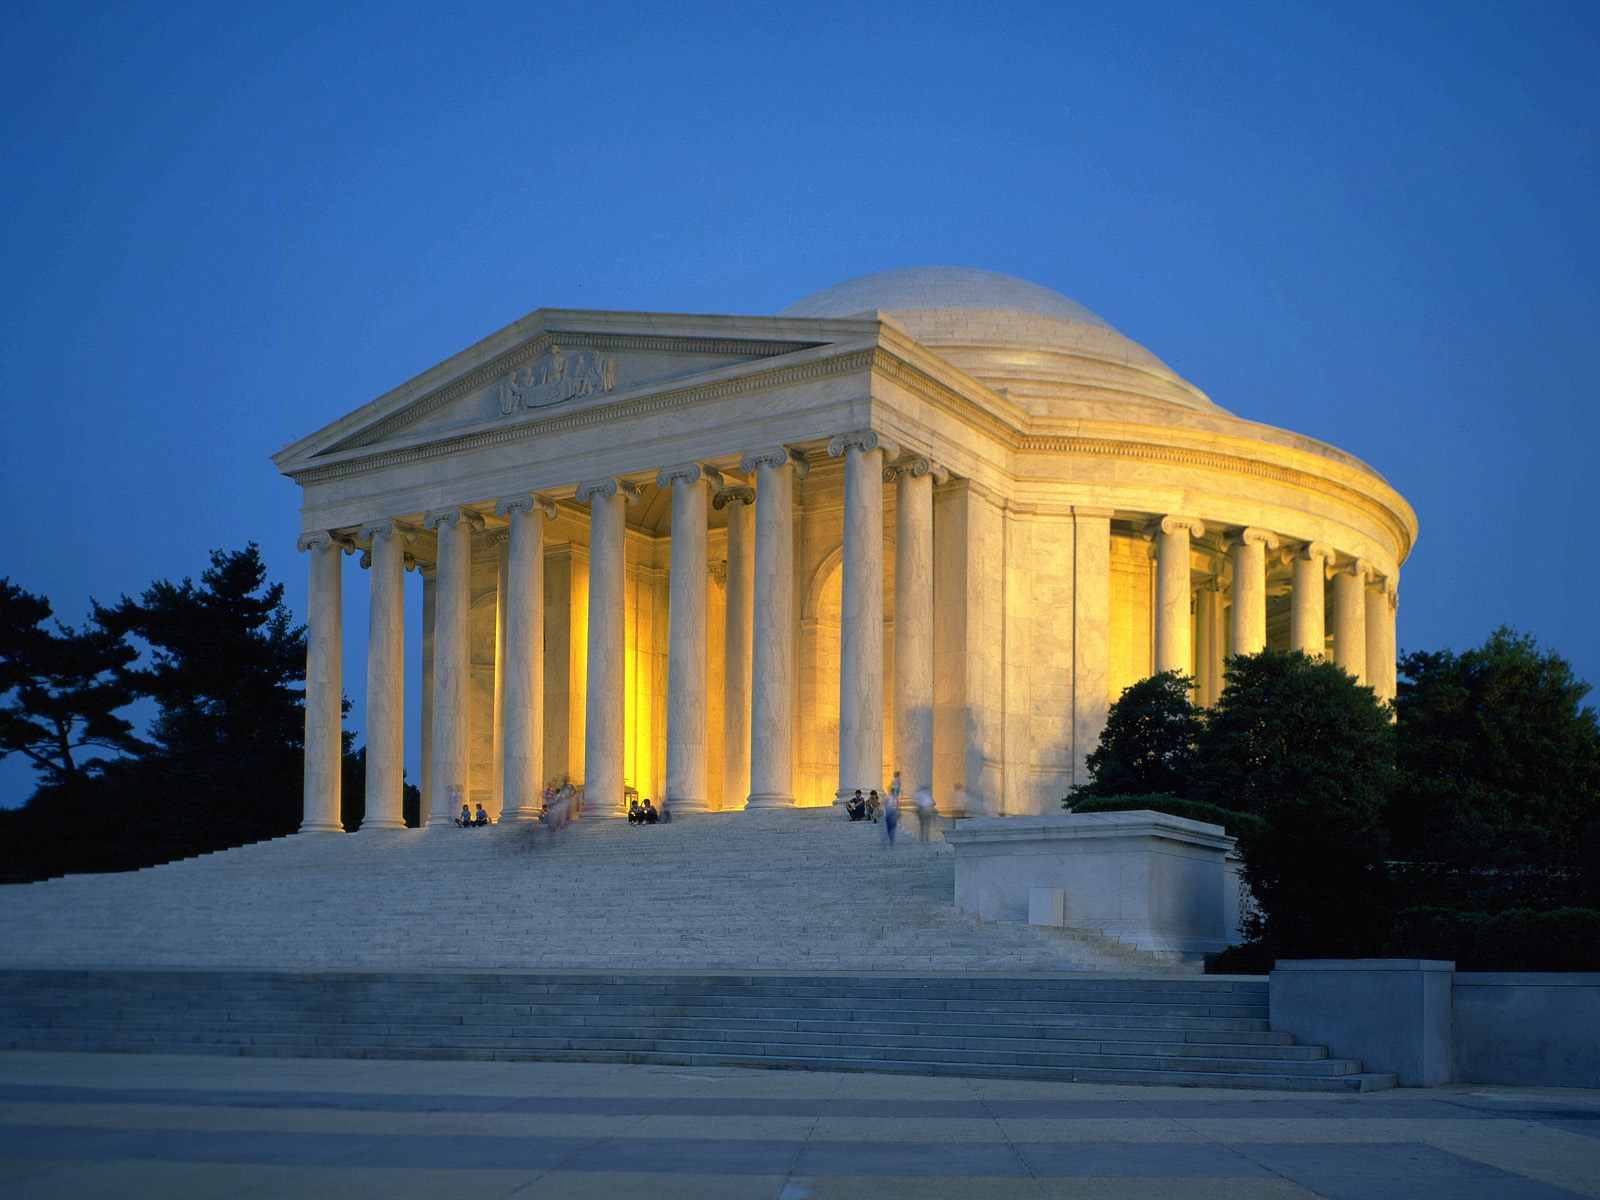 Architecture: The Jefferson Memorial